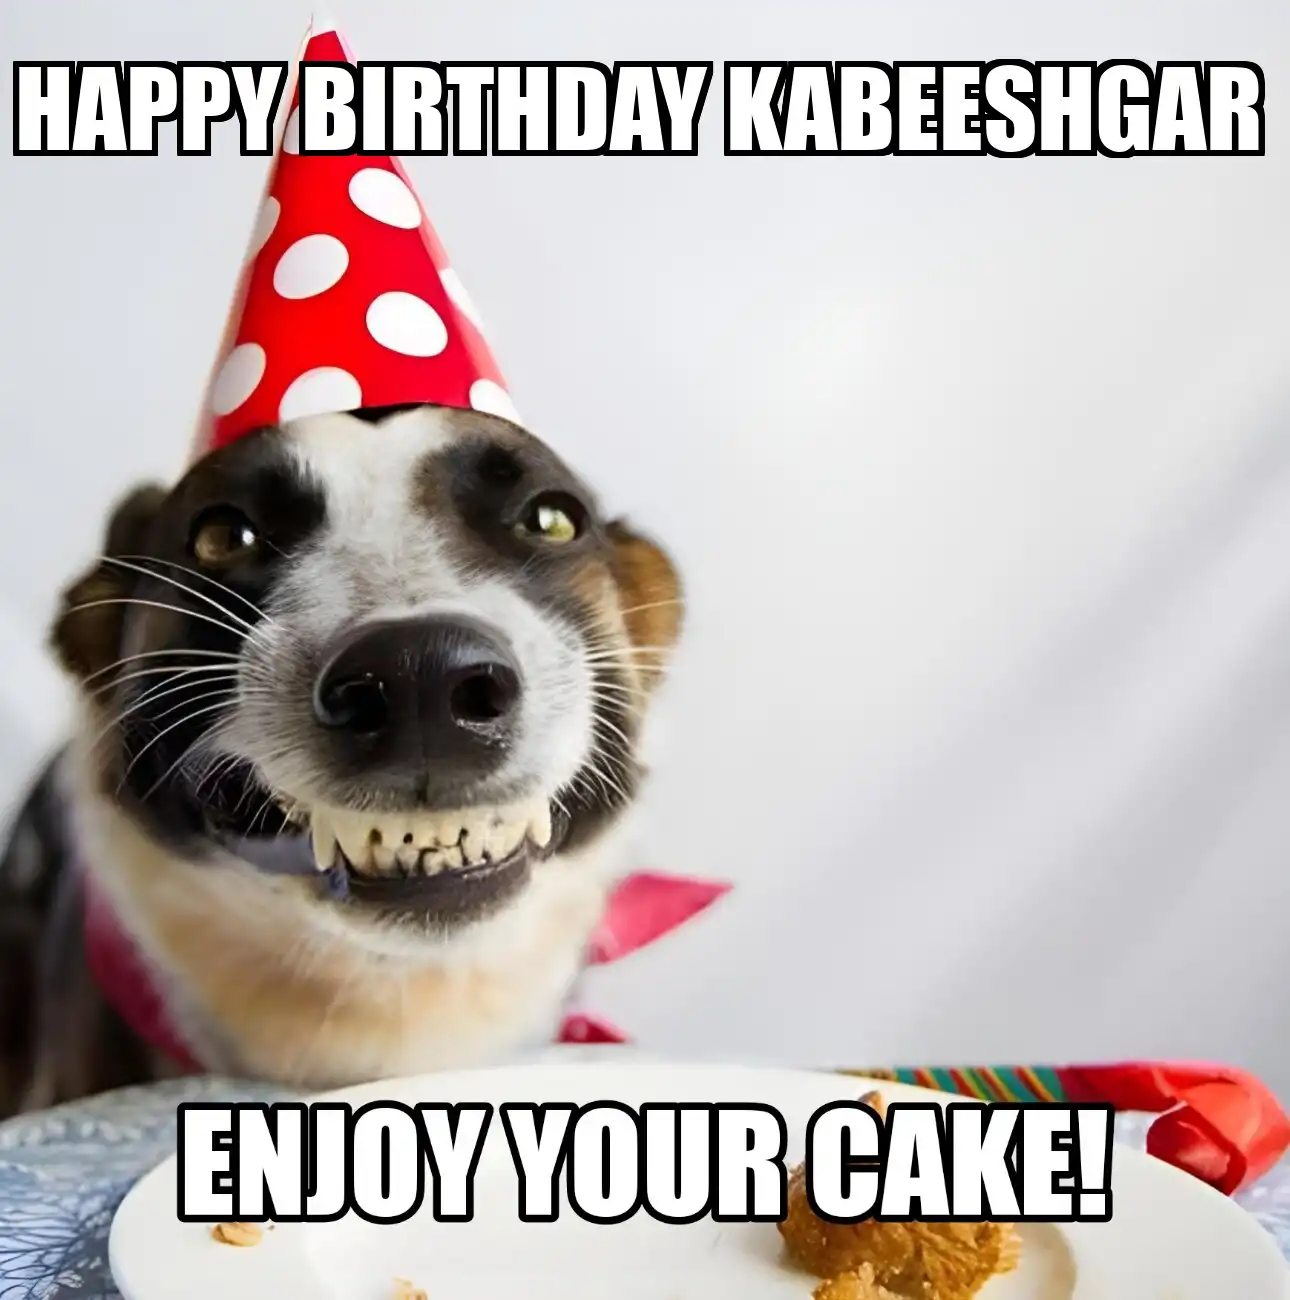 Happy Birthday Kabeeshgar Enjoy Your Cake Dog Meme